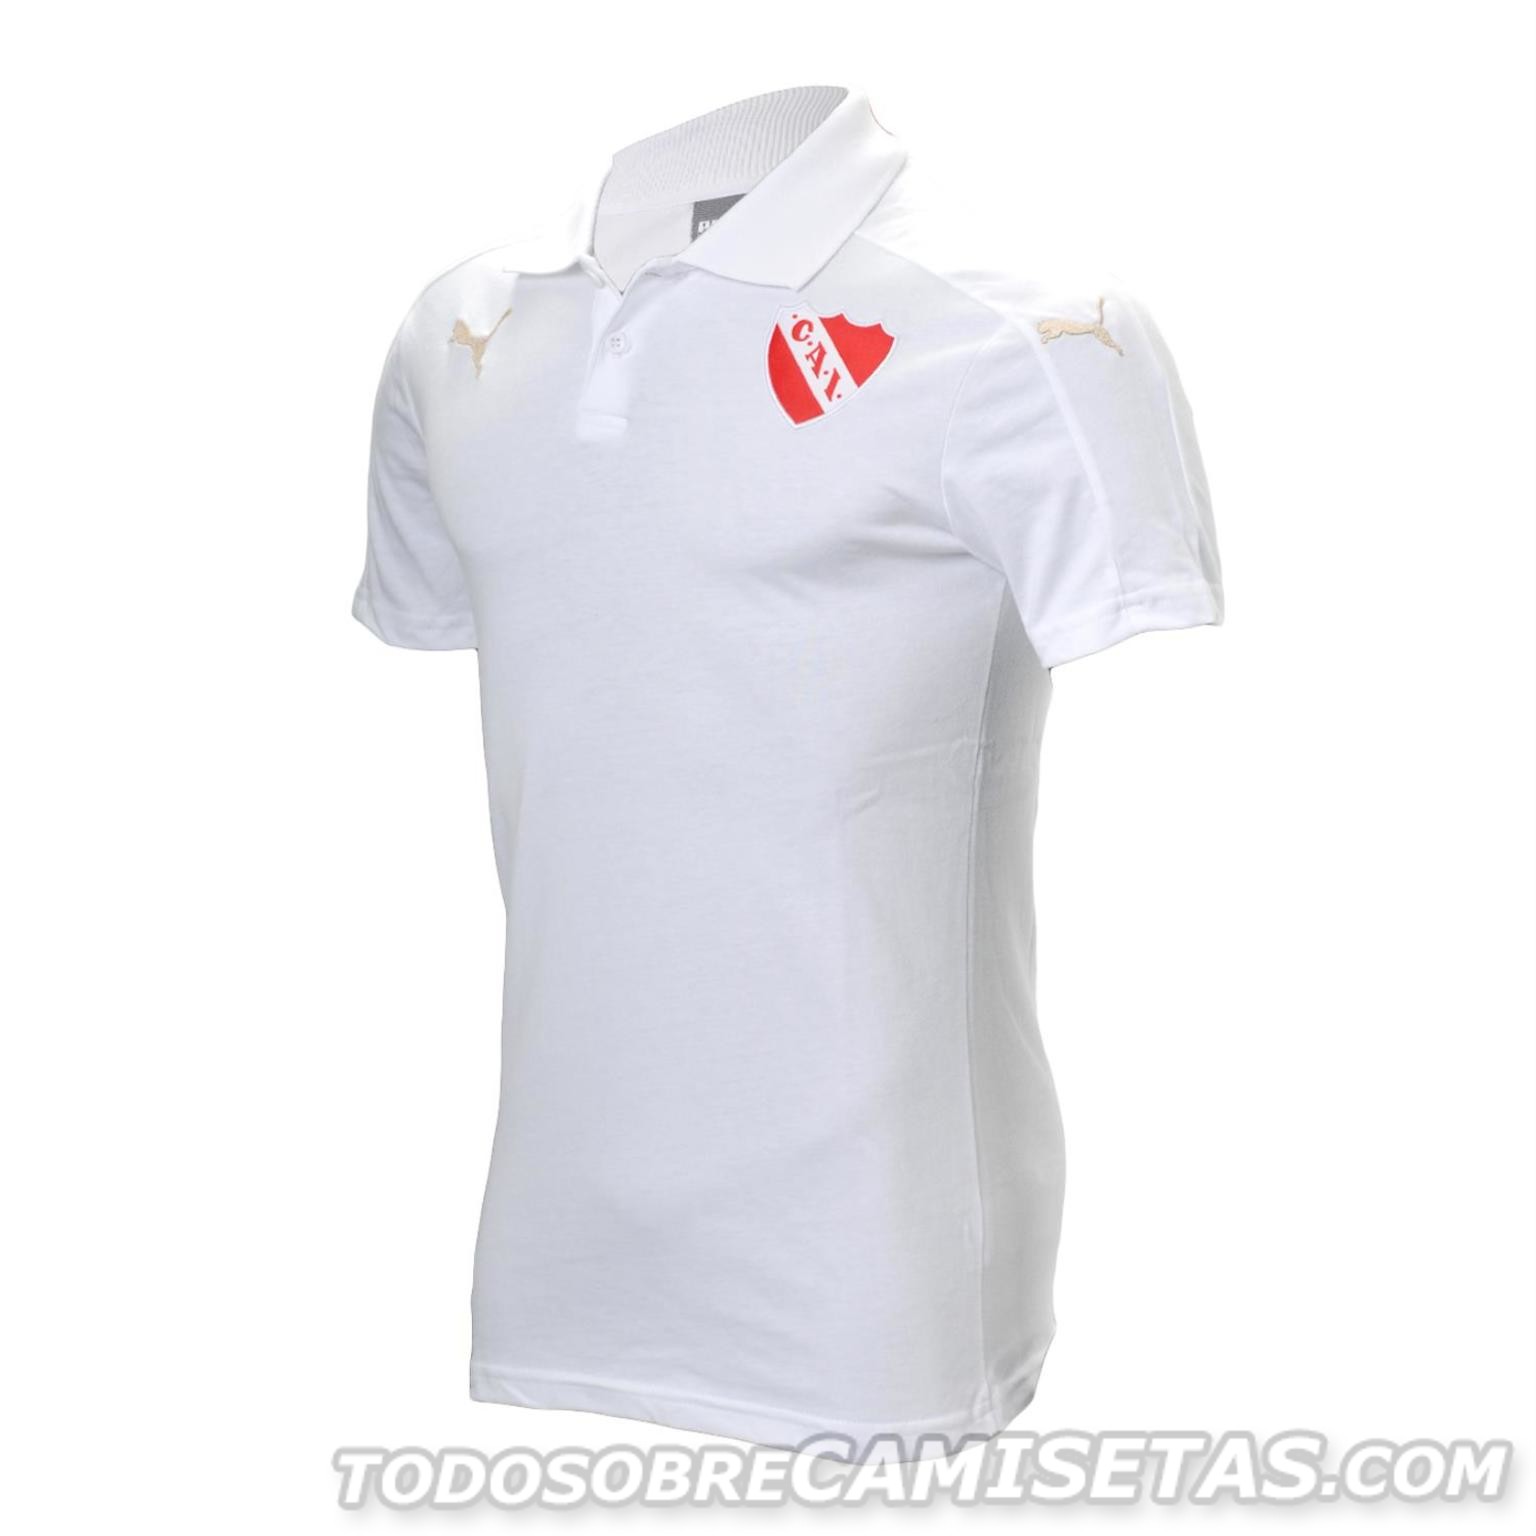 Camiseta Blanca PUMA de Independiente 2017